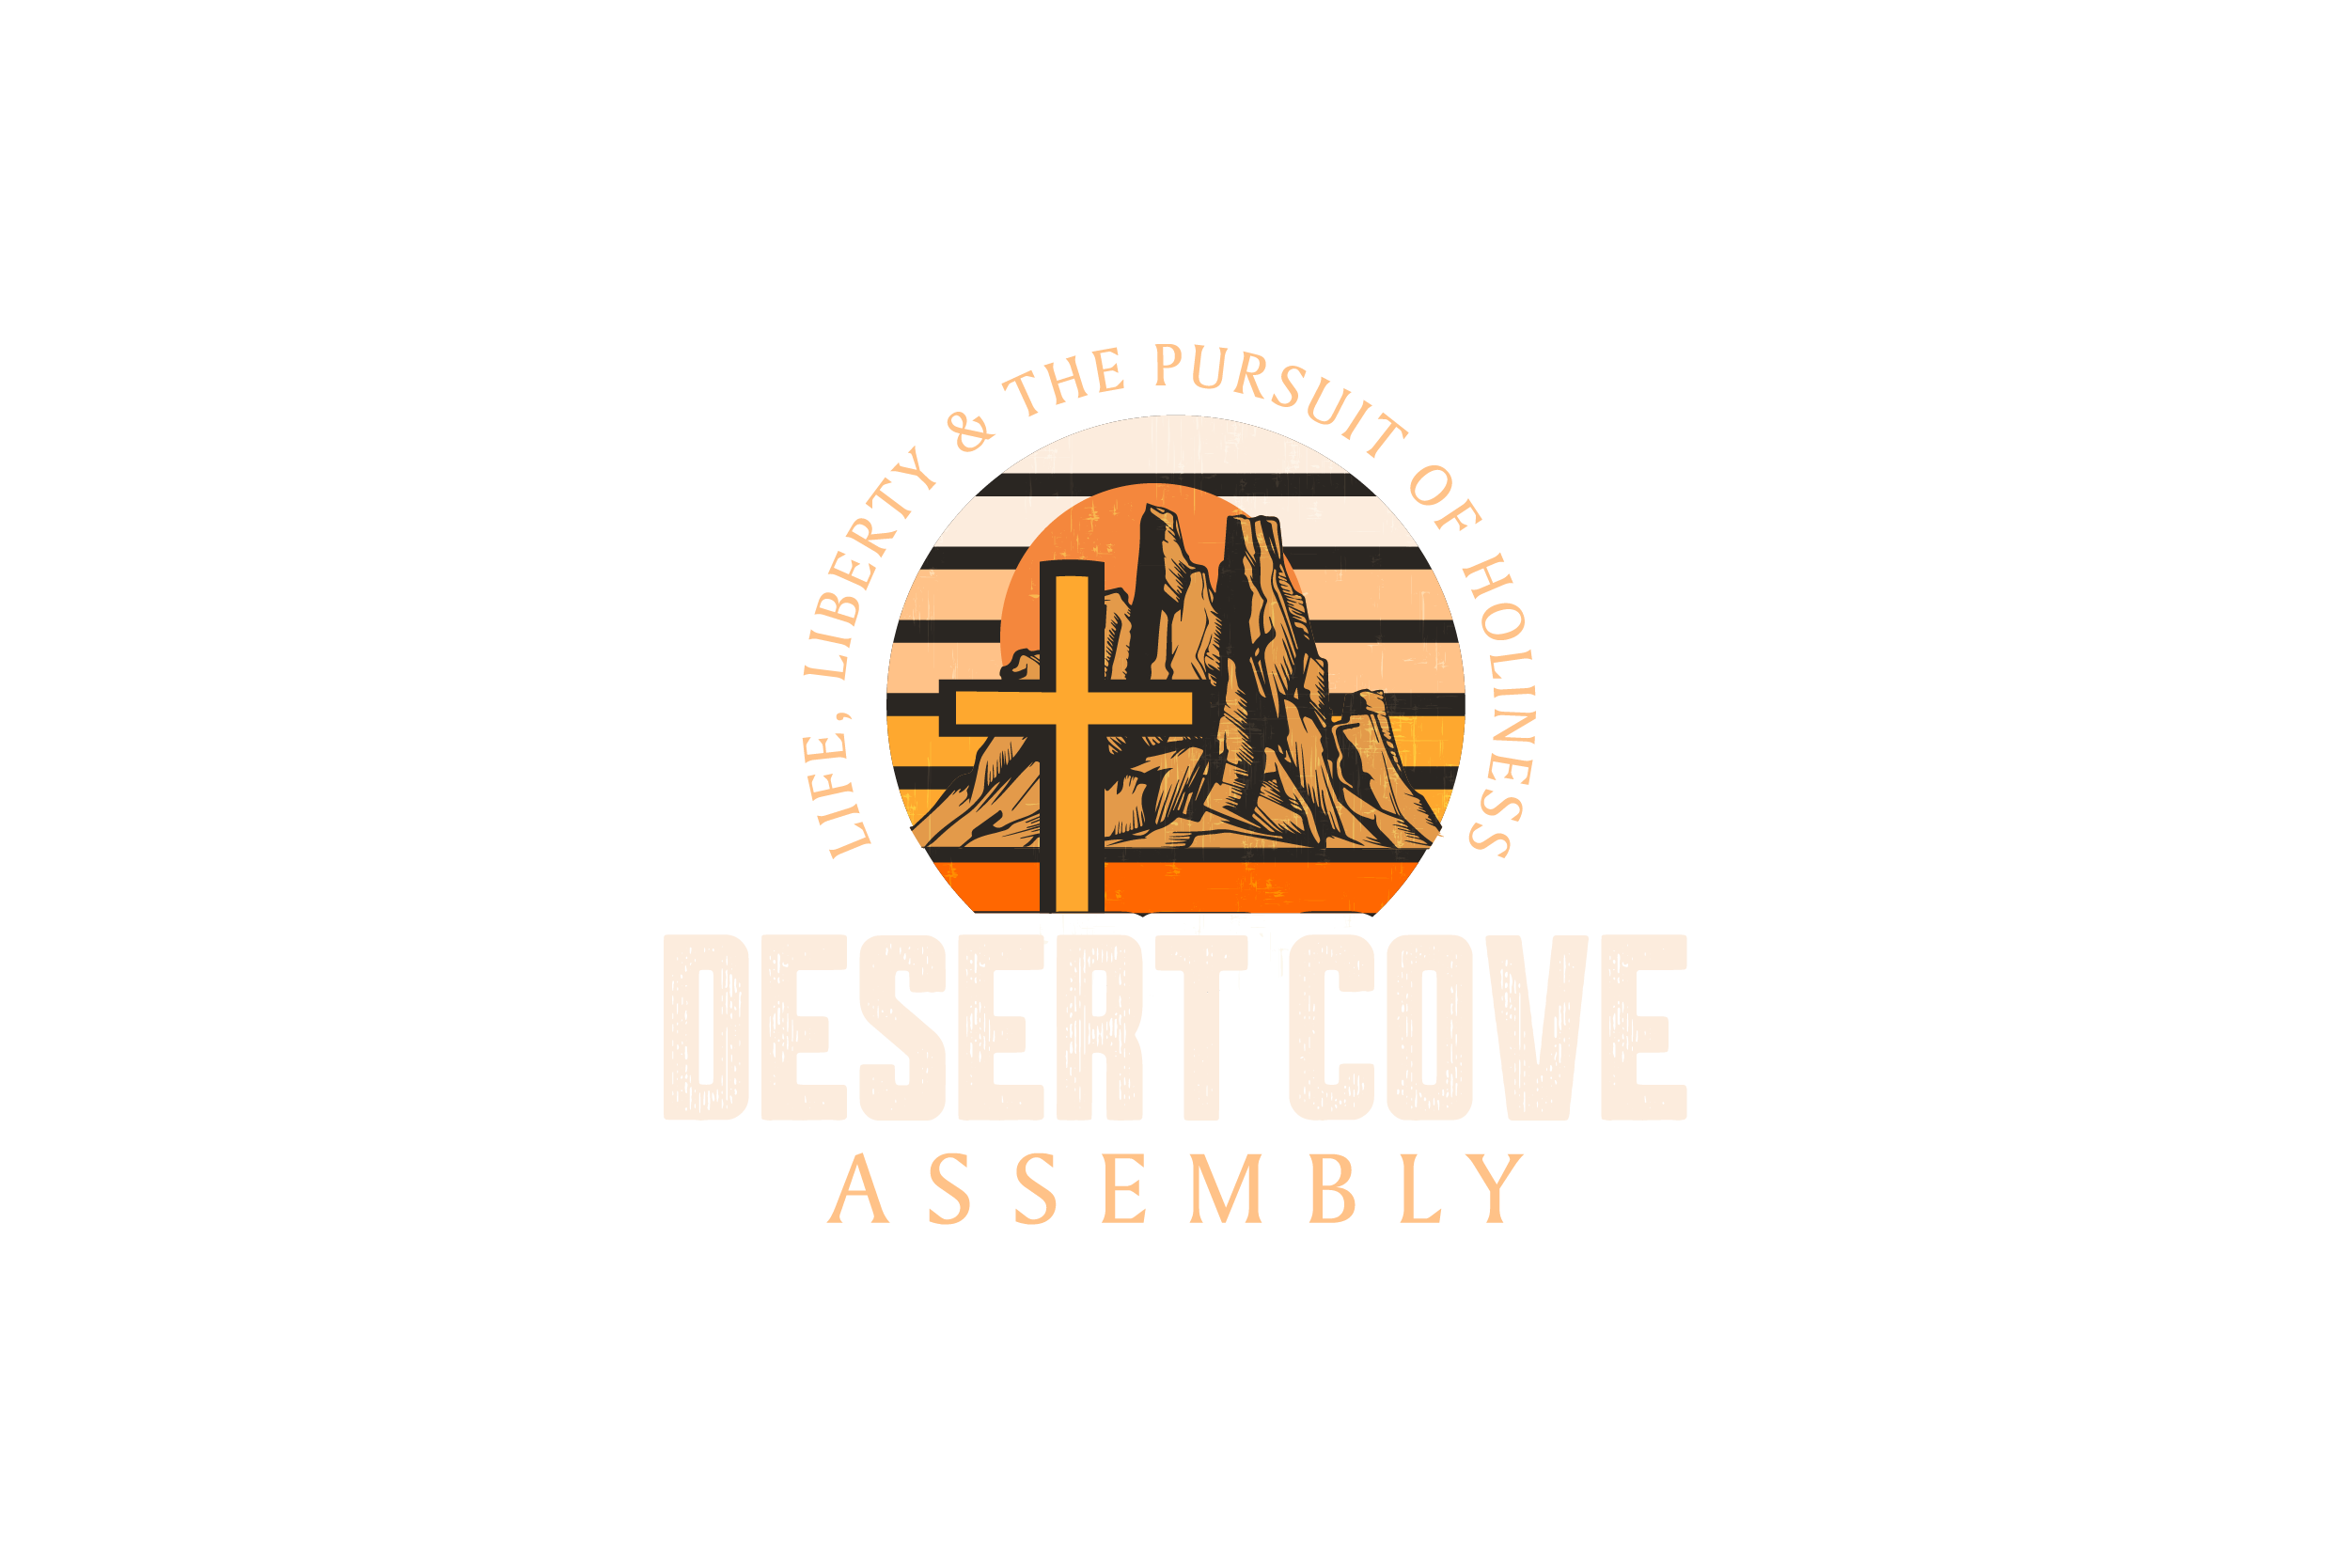 Desert Cove Assembly